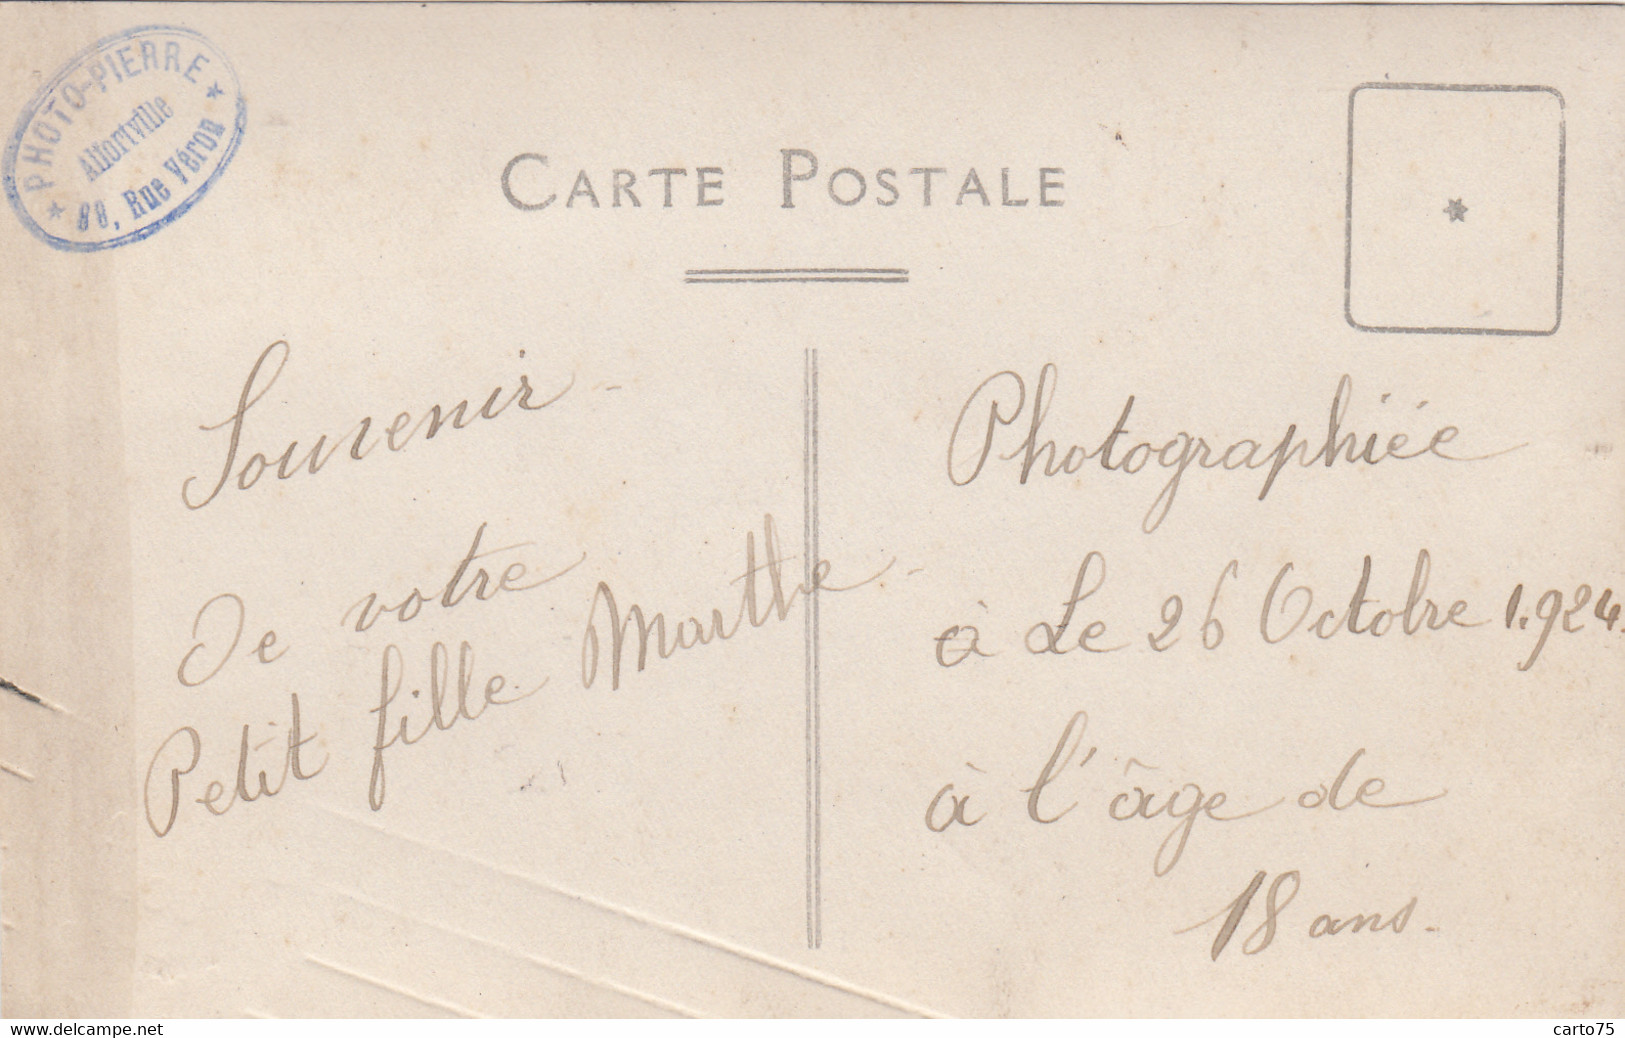 Photographie - Carte-Photo Jeune Fille - Montre Bracelet 1924 - Studio Photo-Pierre 88 Rue Véron 94 Alfortville - Photographs